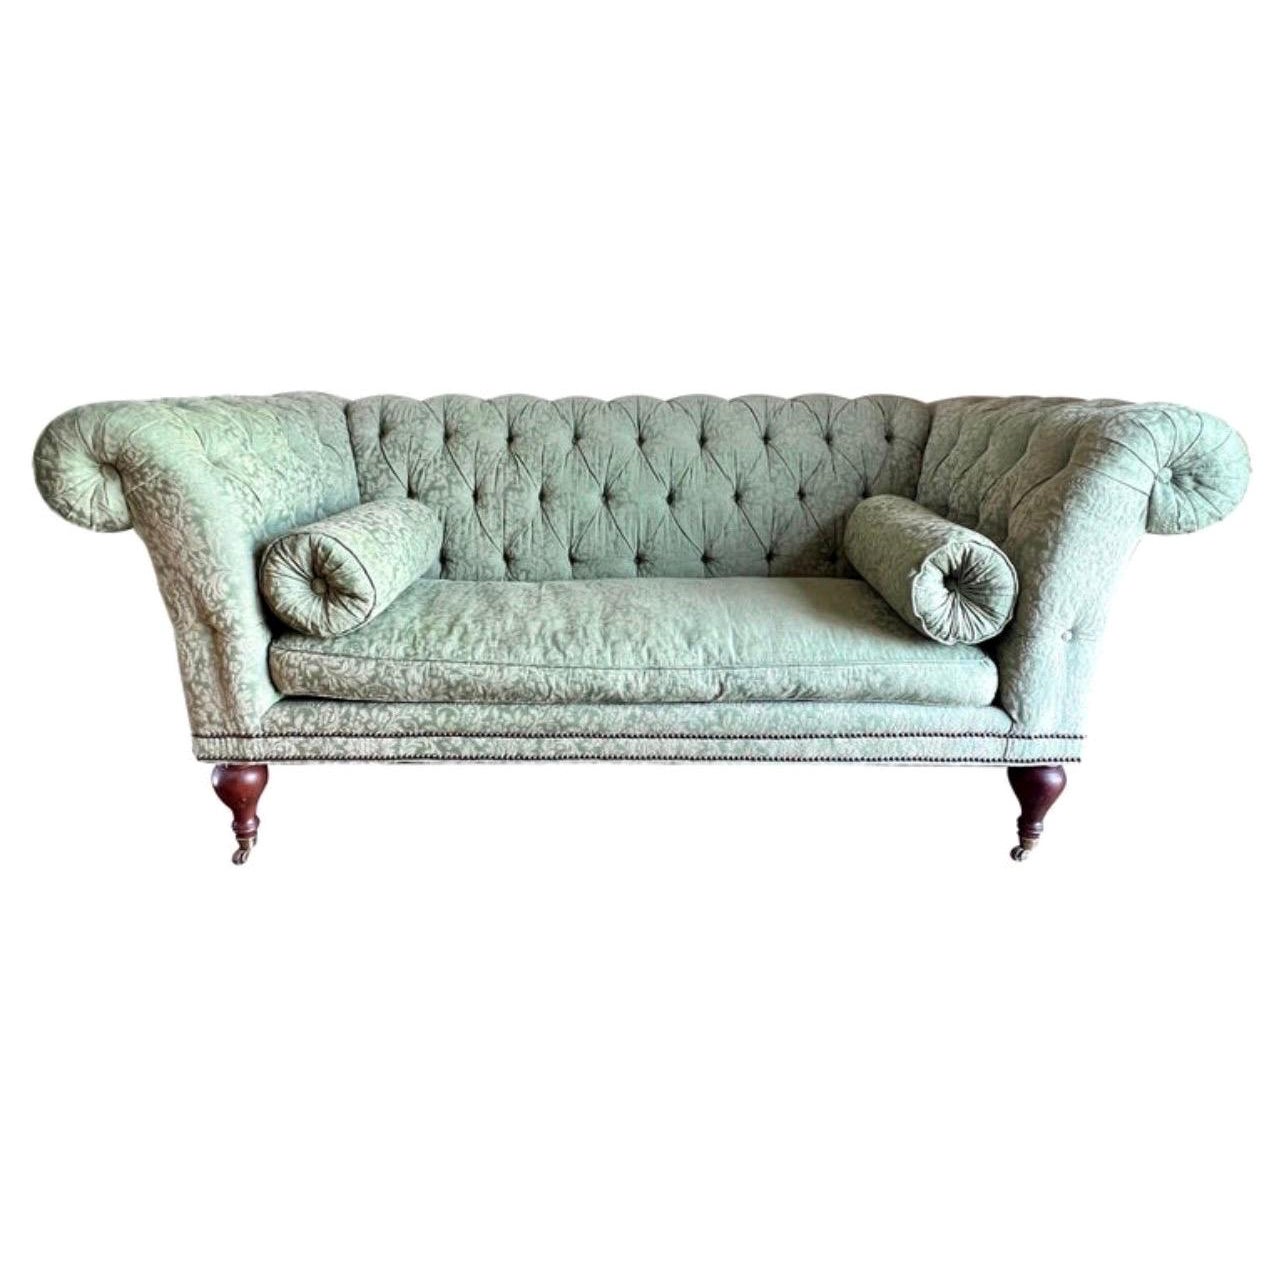 Drexel getuftetes Chesterfield-Sofa mit Schnörkelarm für Lillian August